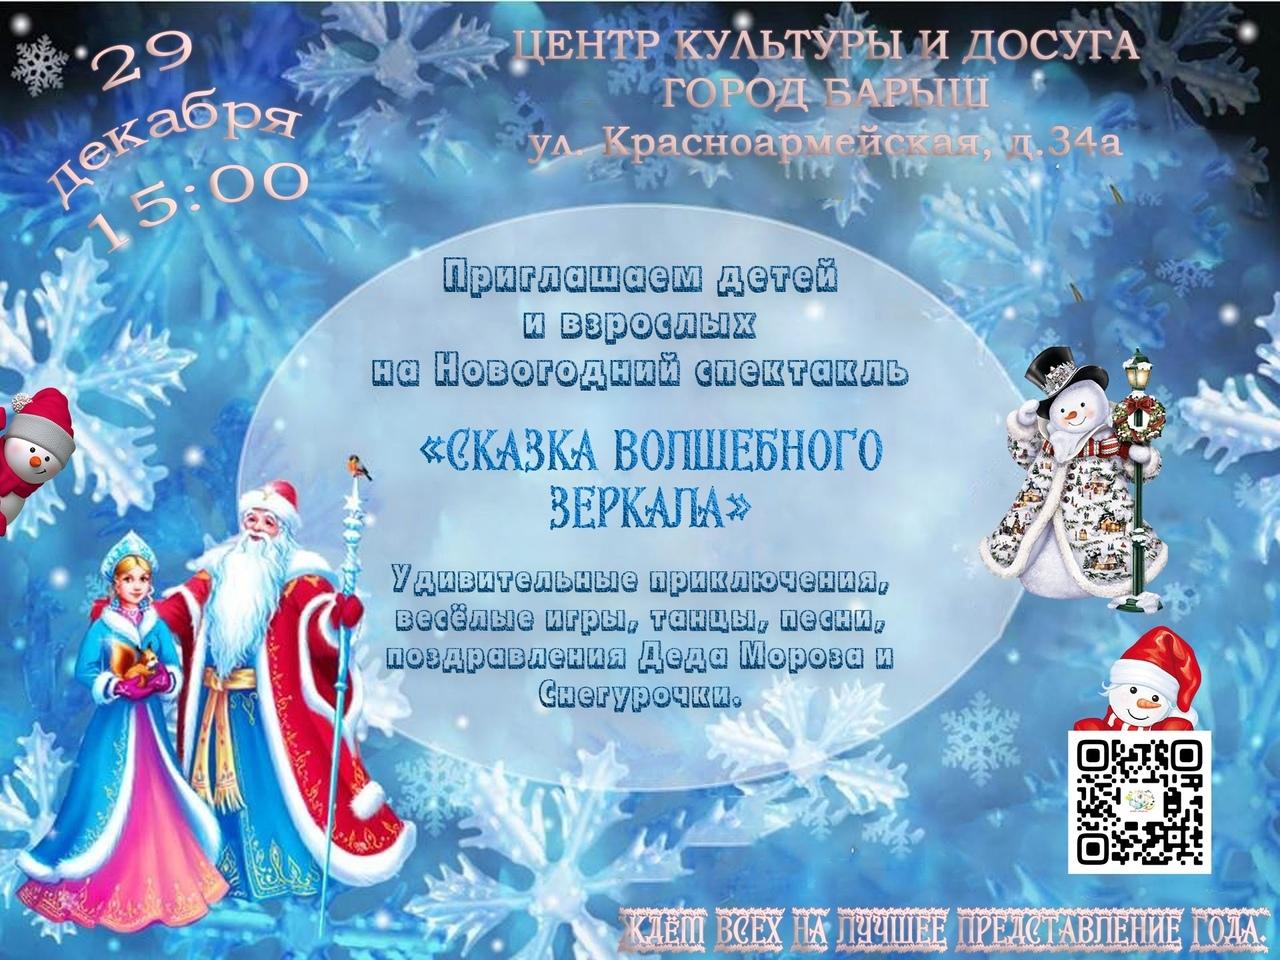 29 декабря в 15:00 состоится Новогодний спектакль «Сказка волшебного зеркала».